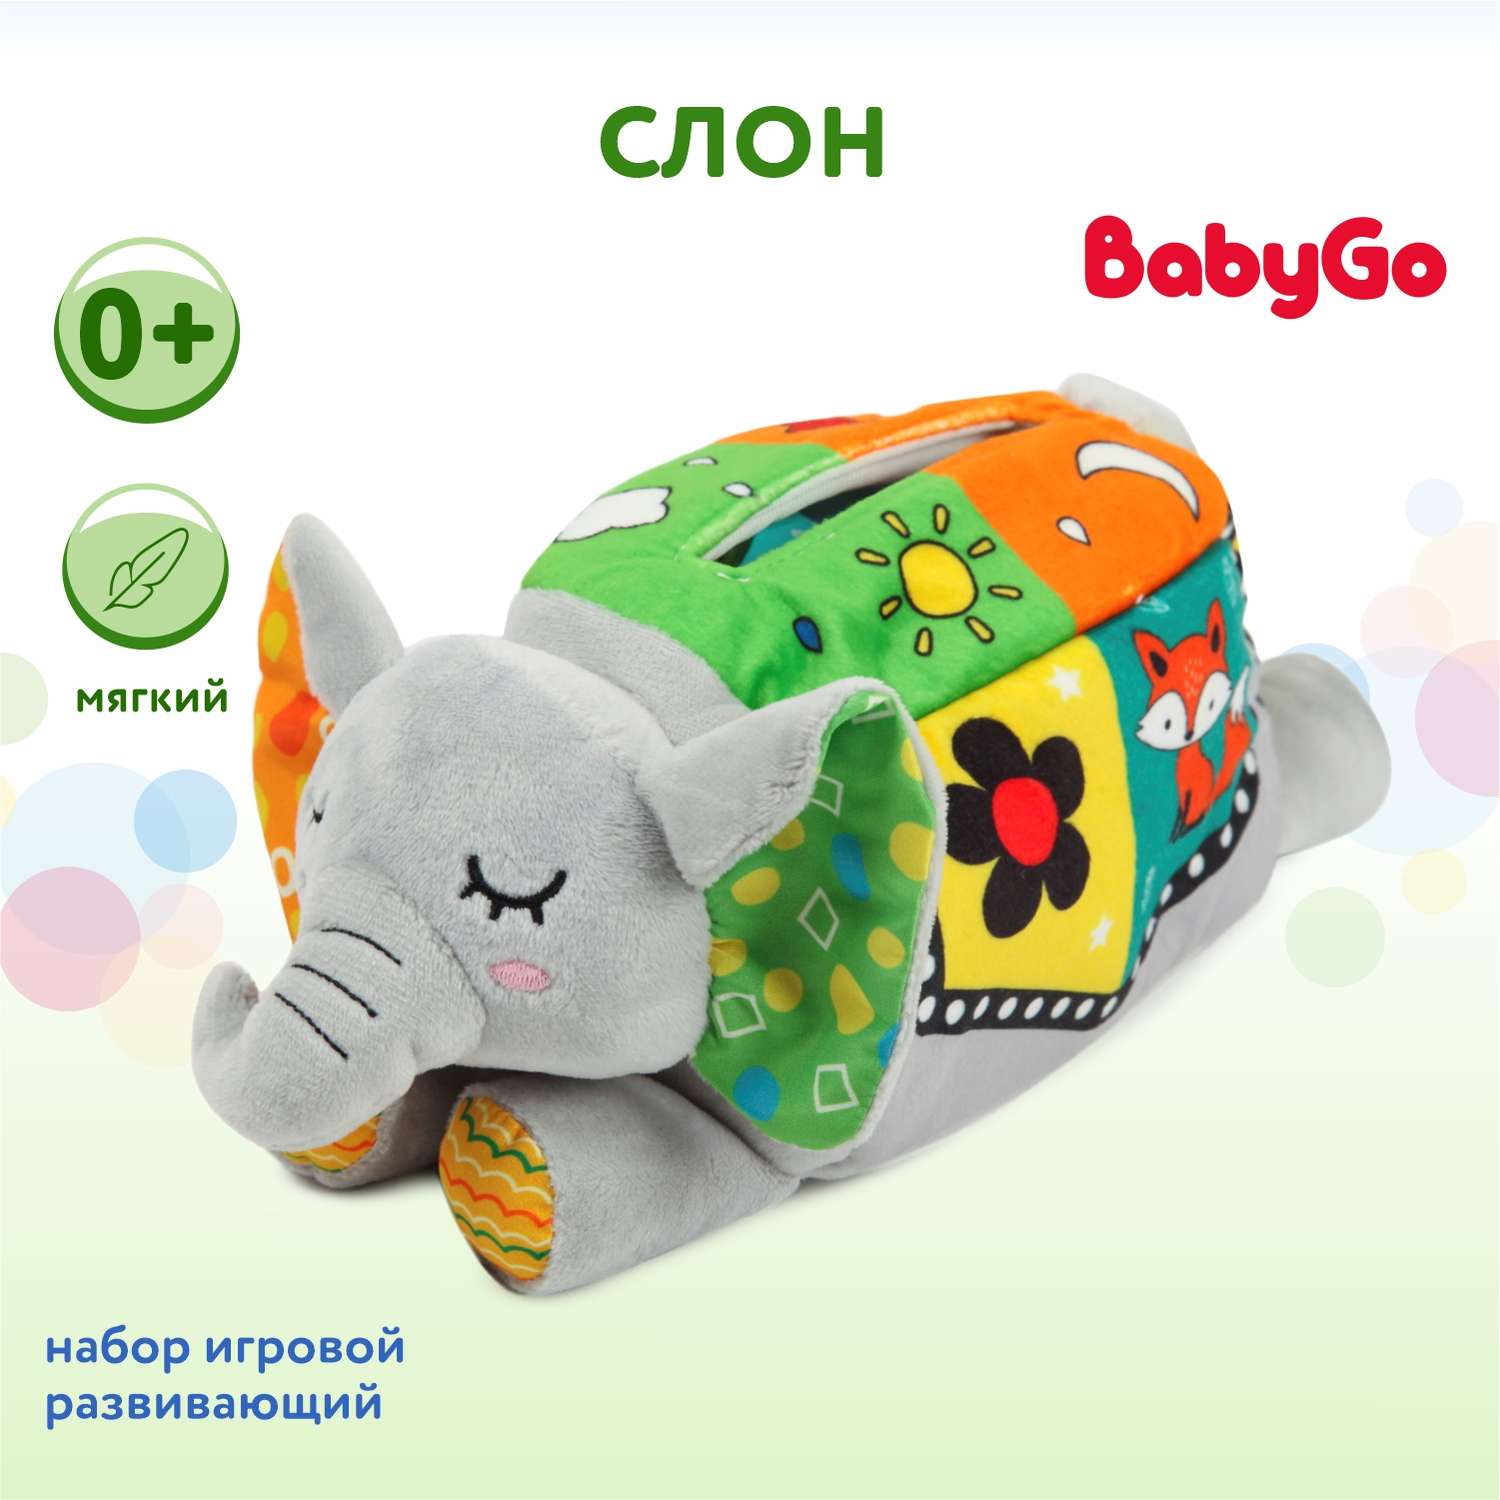 Набор игровой BabyGo Слон развивающий мягкий CE-TMP53 - фото 1